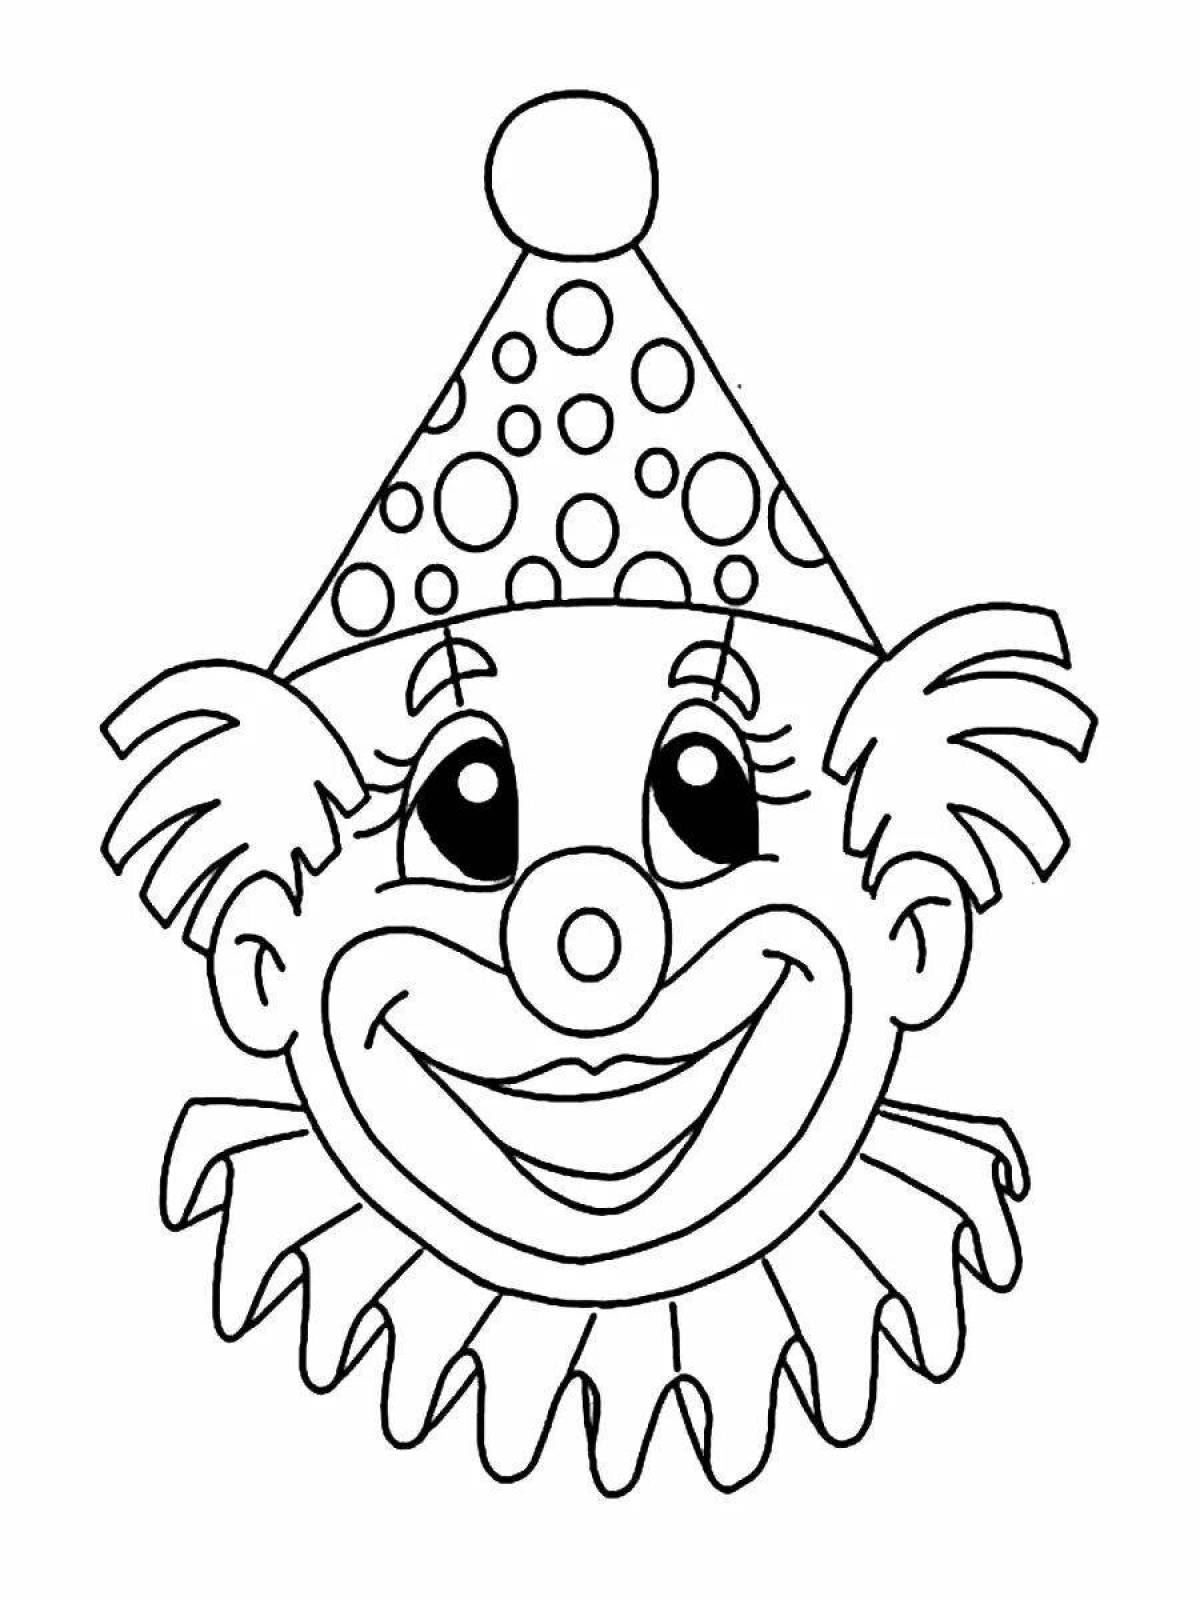 Яркий клоун-раскраска для детей